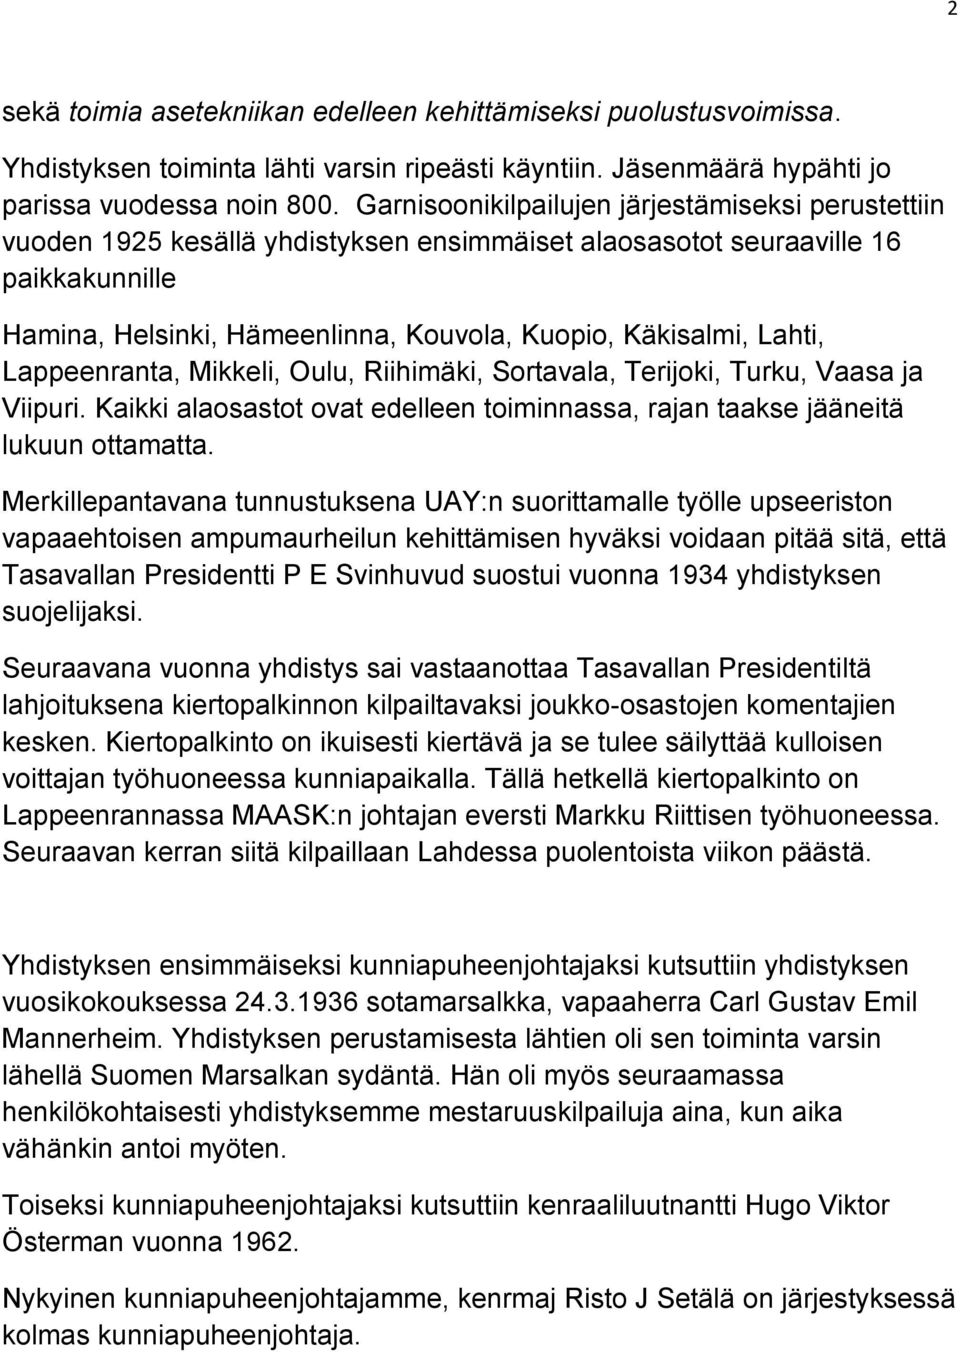 Lahti, Lappeenranta, Mikkeli, Oulu, Riihimäki, Sortavala, Terijoki, Turku, Vaasa ja Viipuri. Kaikki alaosastot ovat edelleen toiminnassa, rajan taakse jääneitä lukuun ottamatta.